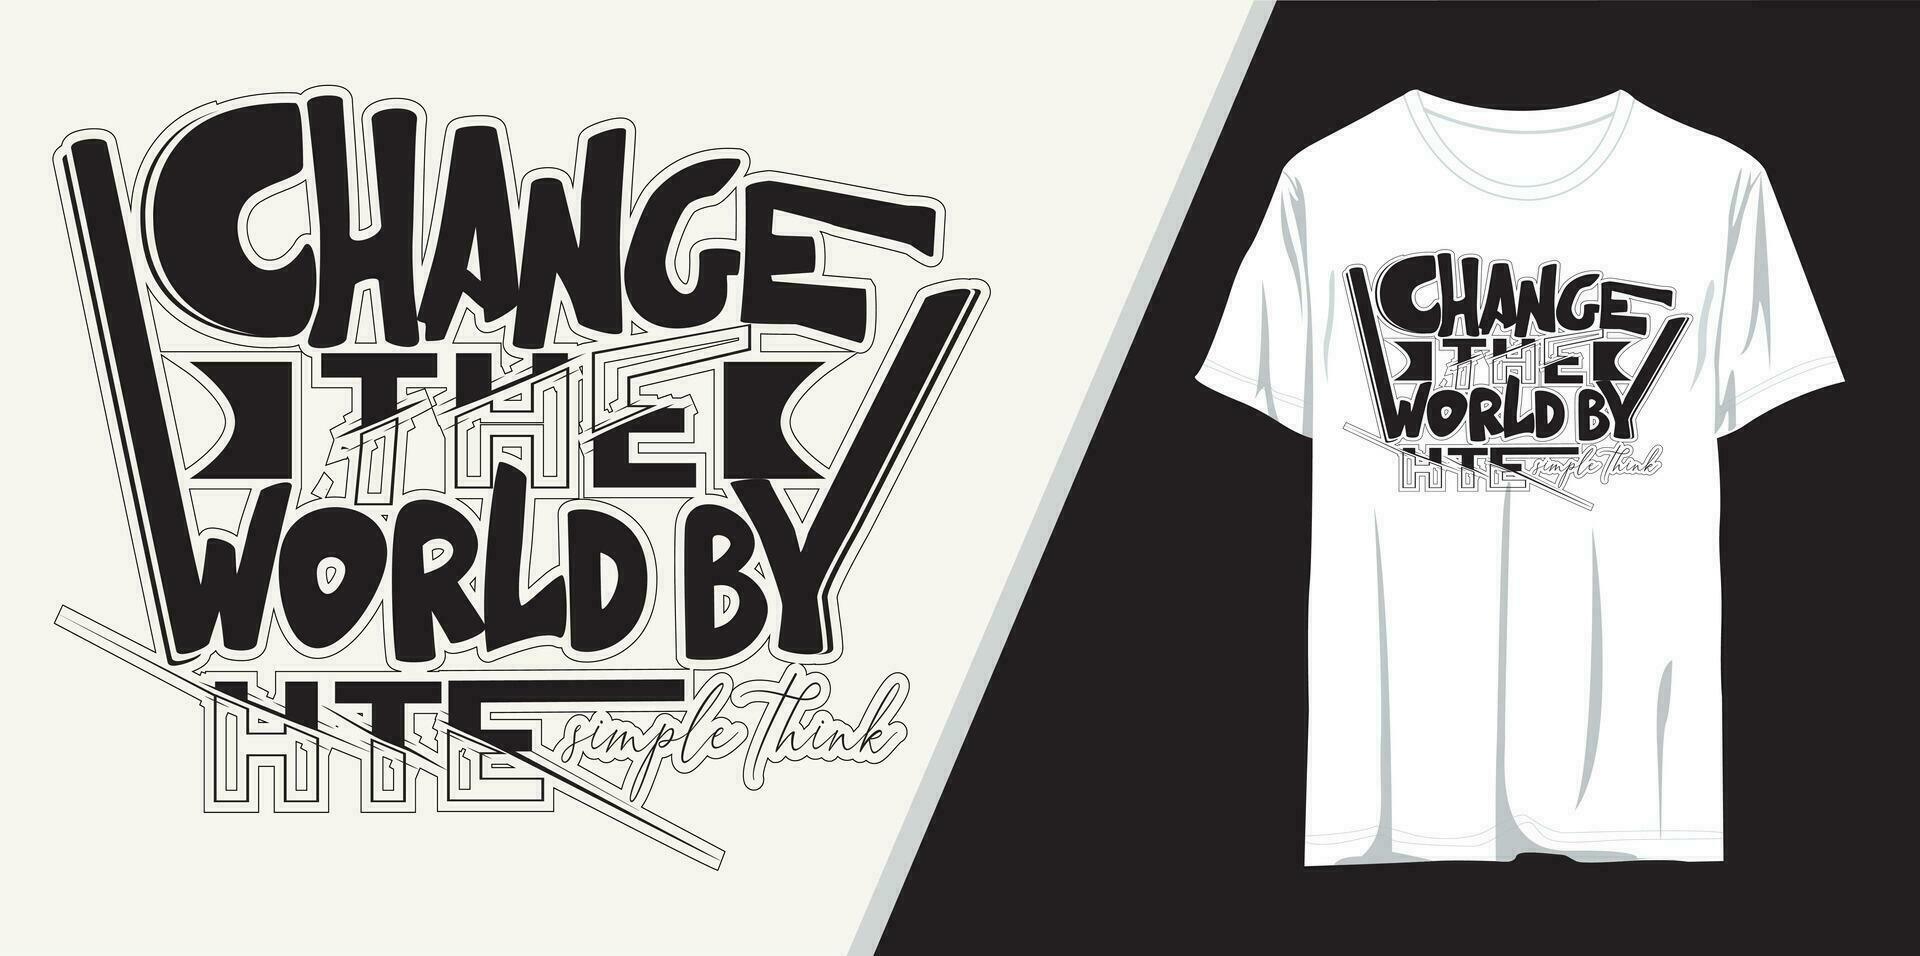 förändra de värld förbi de enkel tror, typografi t-shirt design vektor